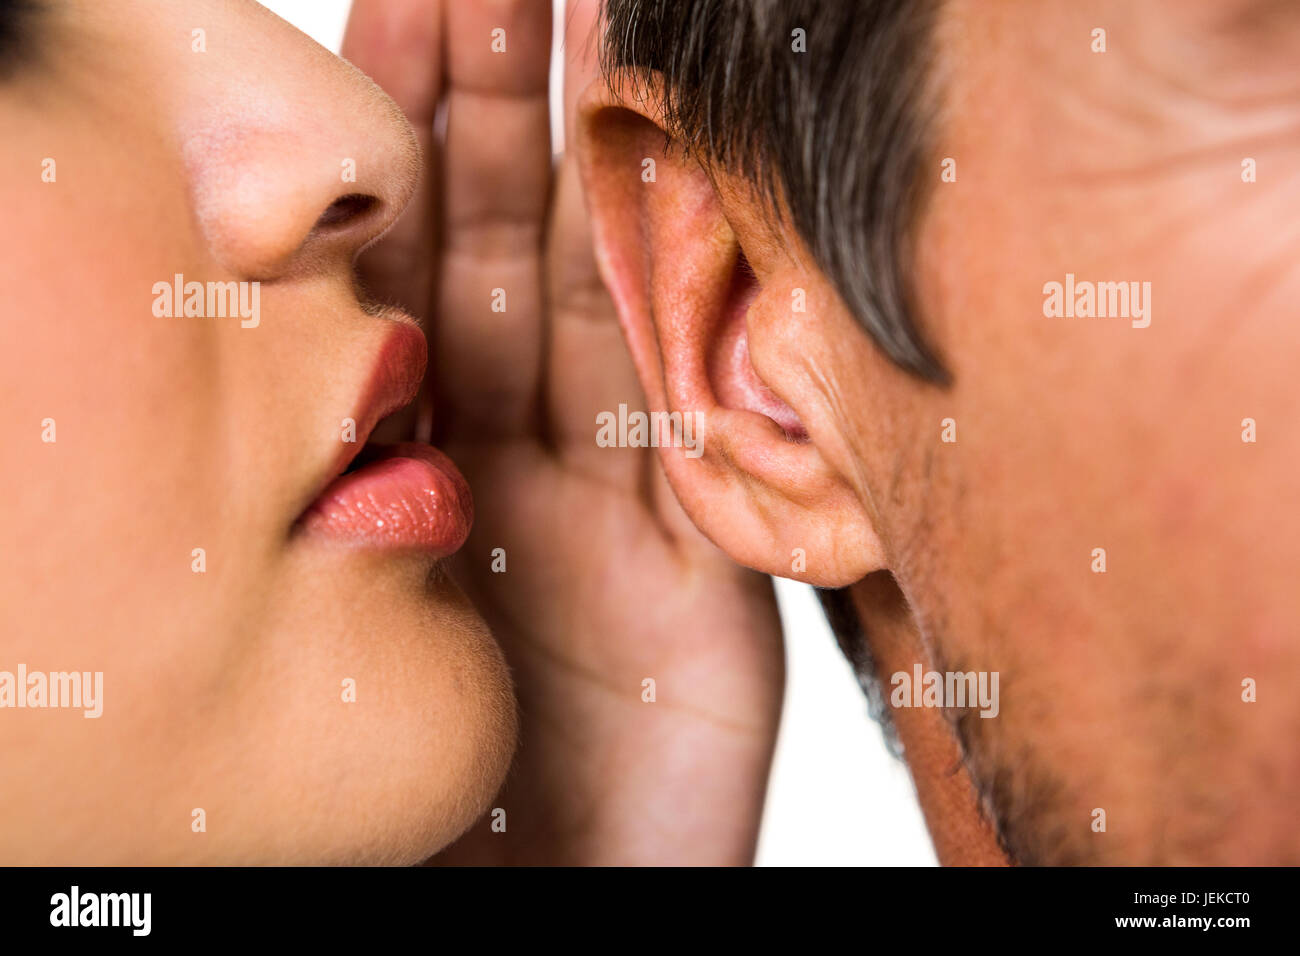 man whispering in ear